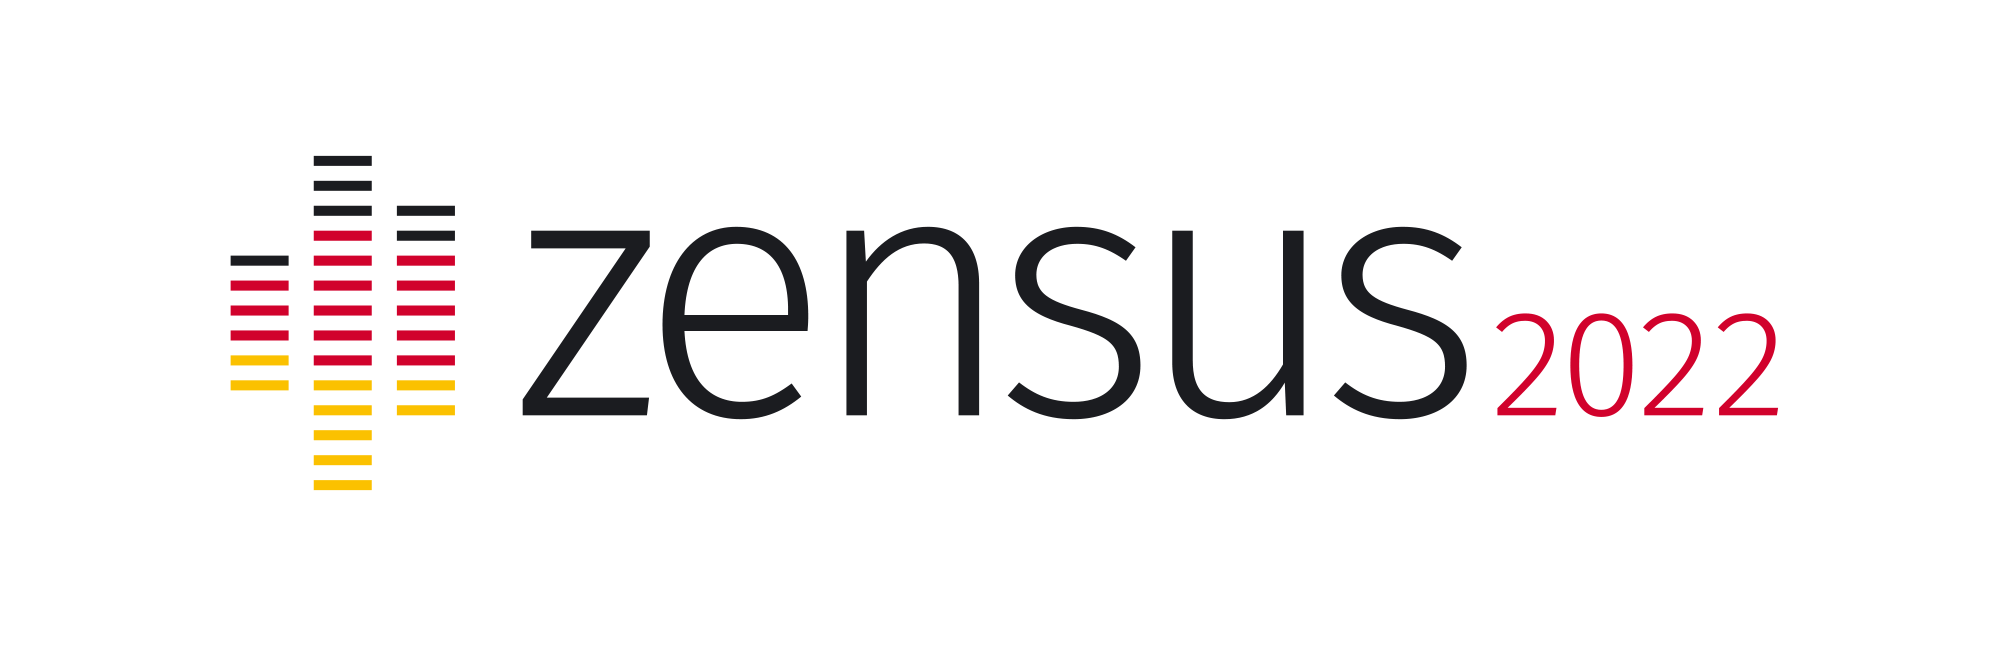 Logo Census 2022